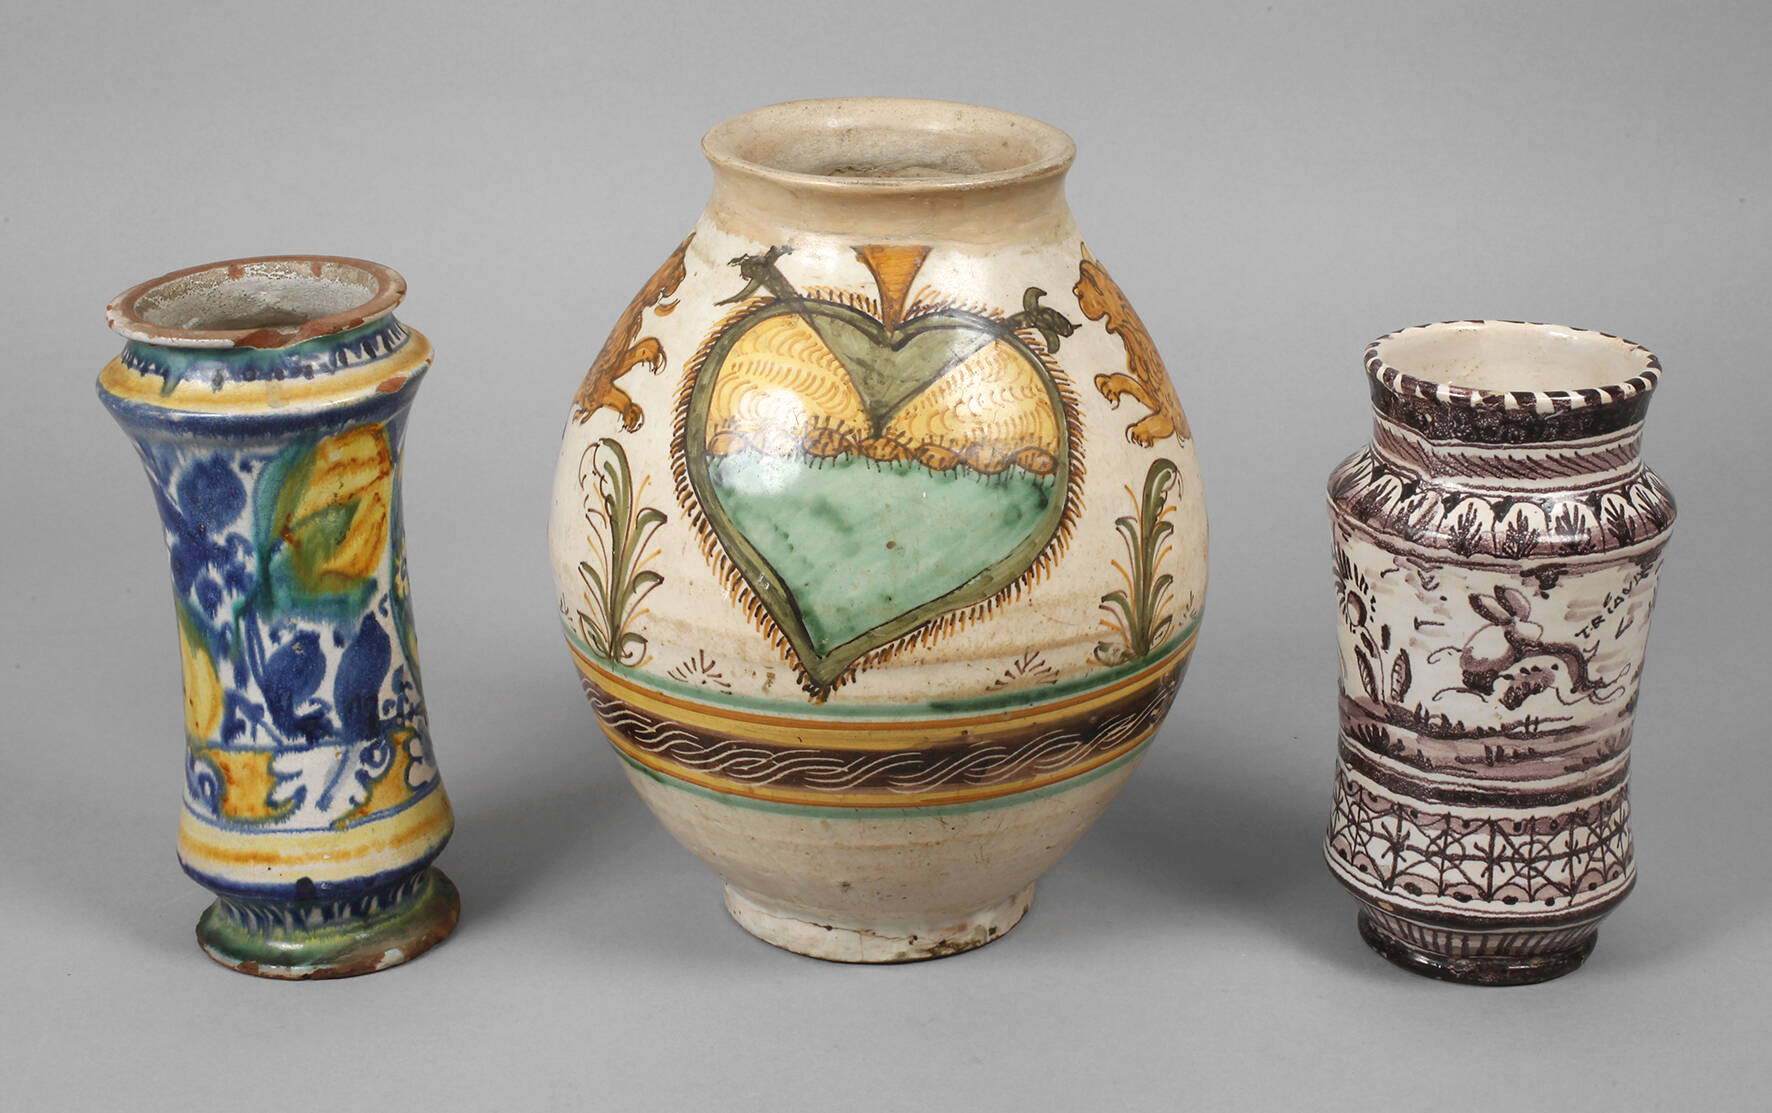 Zwei Albarellos und eine Vase